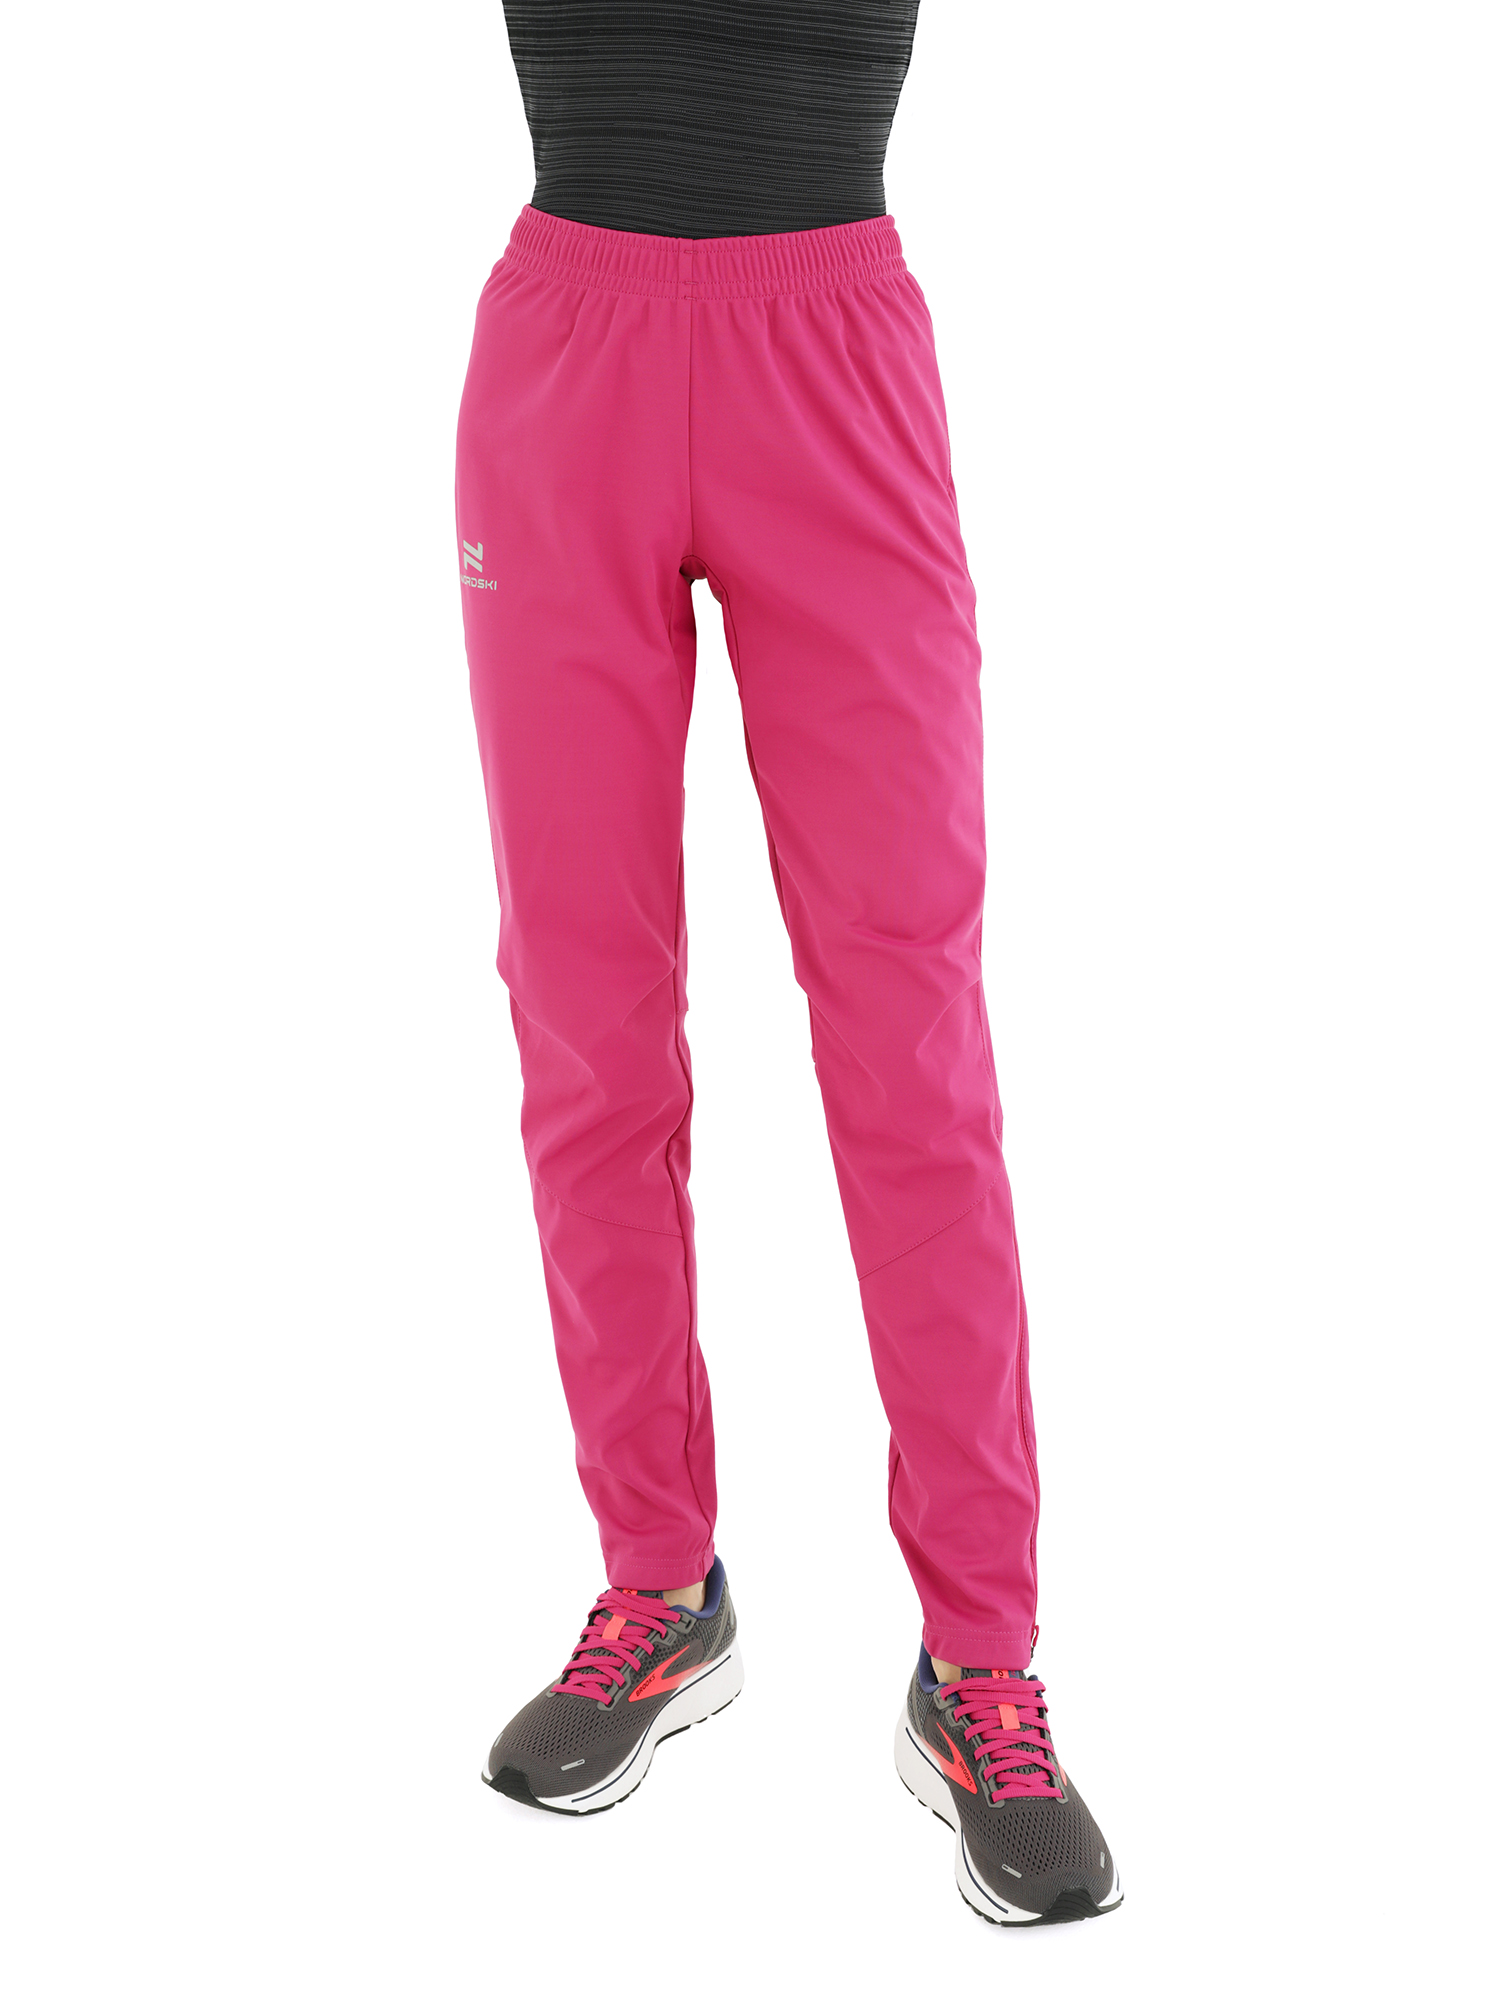 Спортивные брюки женские NordSki Nsw522328 фиолетовые S